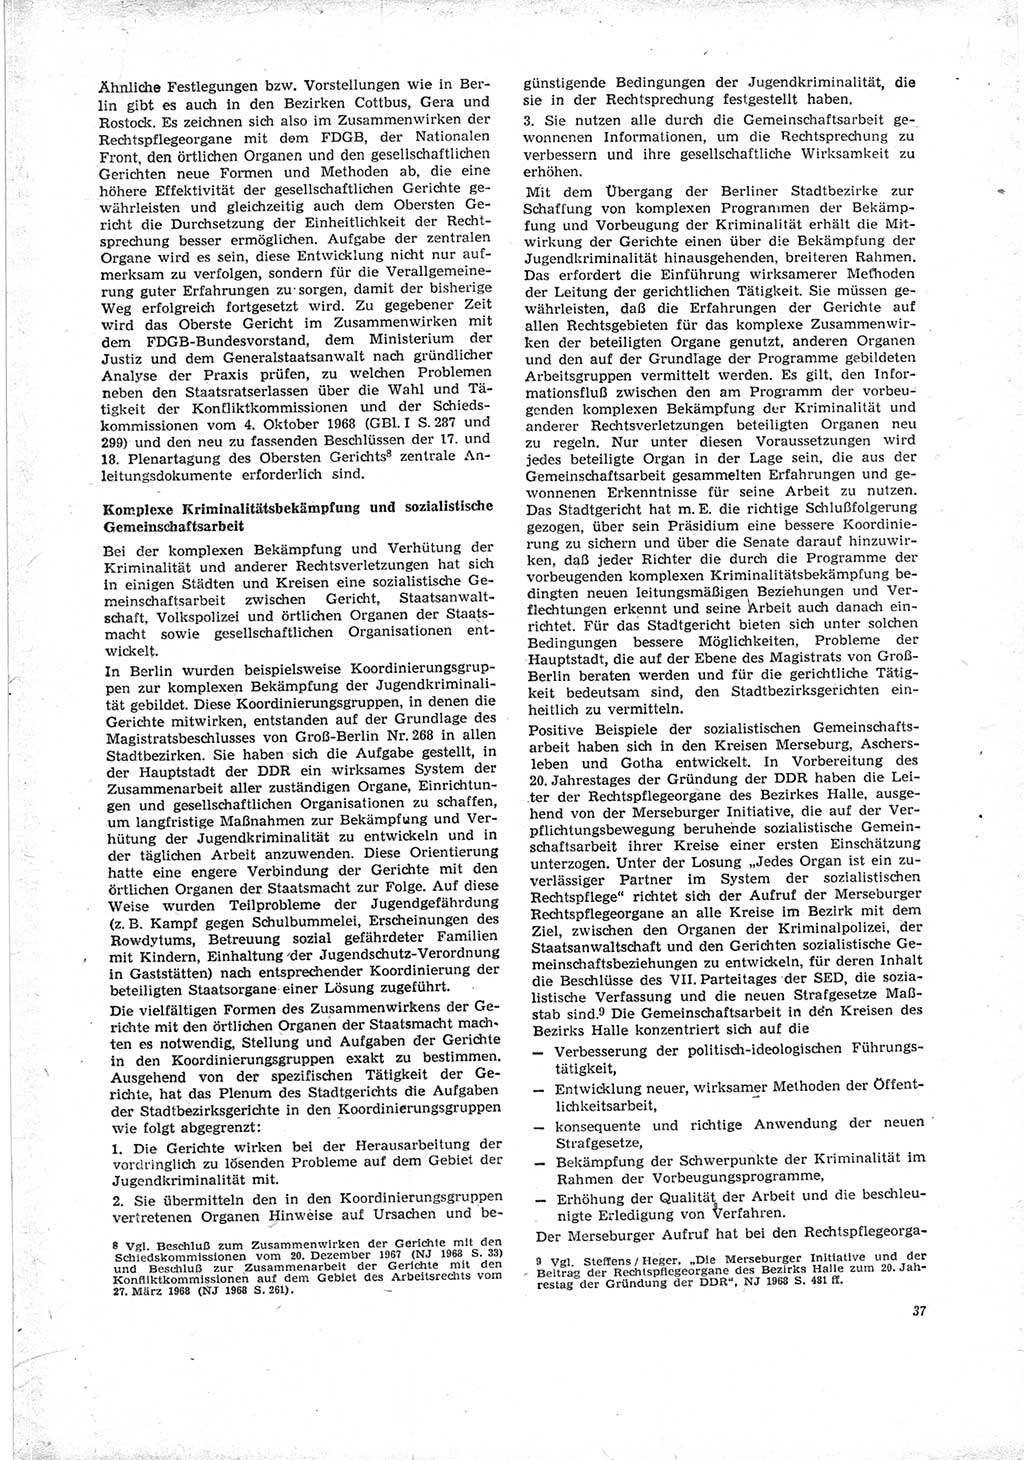 Neue Justiz (NJ), Zeitschrift für Recht und Rechtswissenschaft [Deutsche Demokratische Republik (DDR)], 23. Jahrgang 1969, Seite 37 (NJ DDR 1969, S. 37)